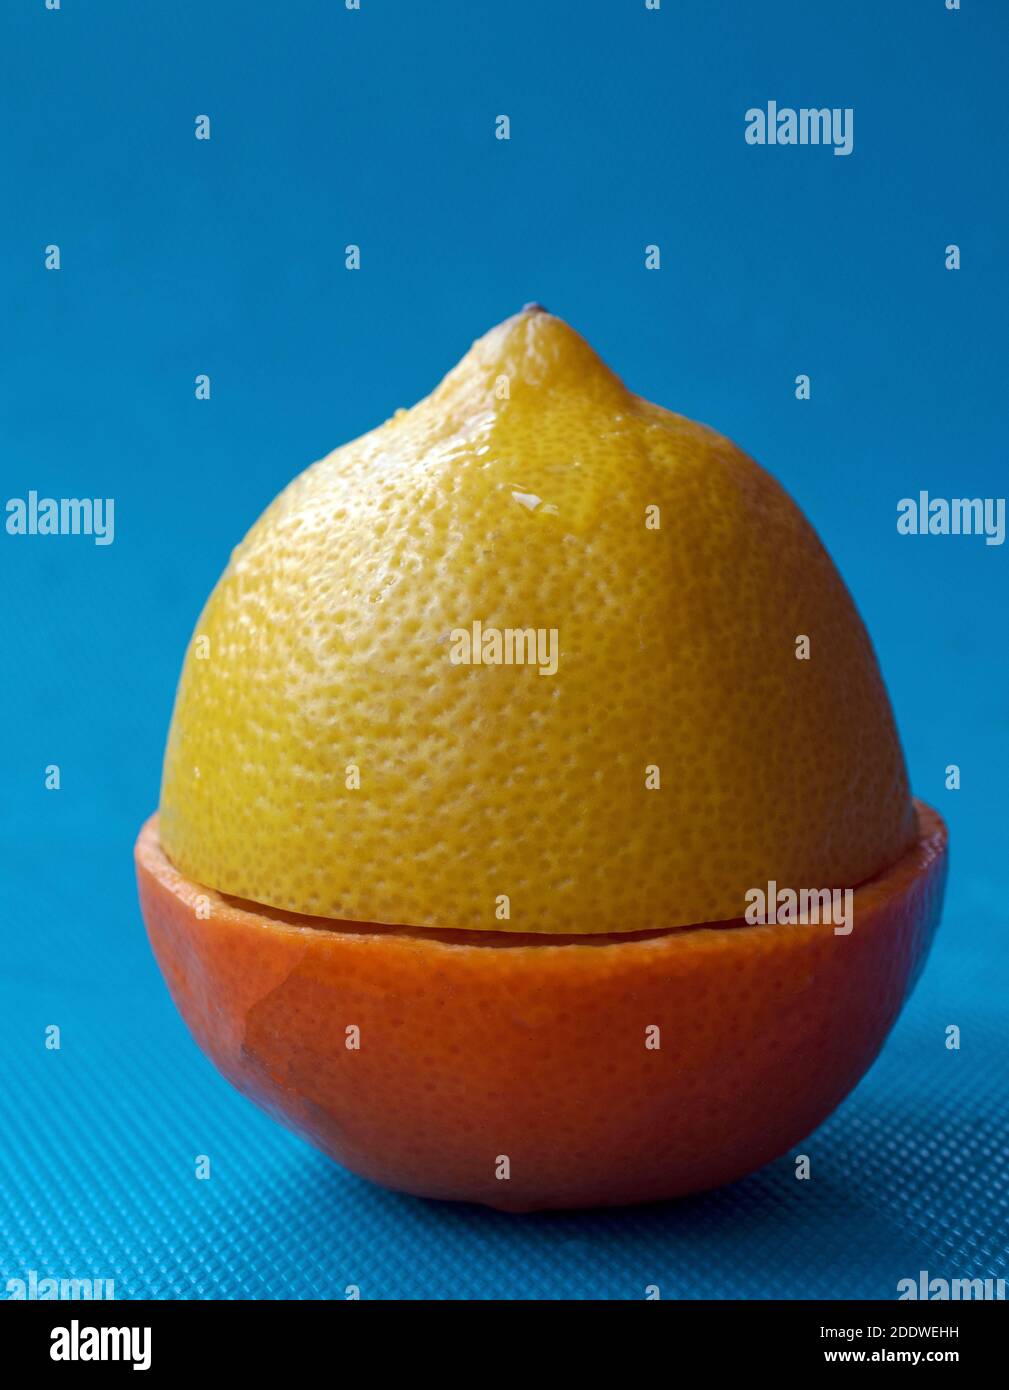 Discordanza di agrumi - limone e mandarino si sono mescolati insieme Foto Stock